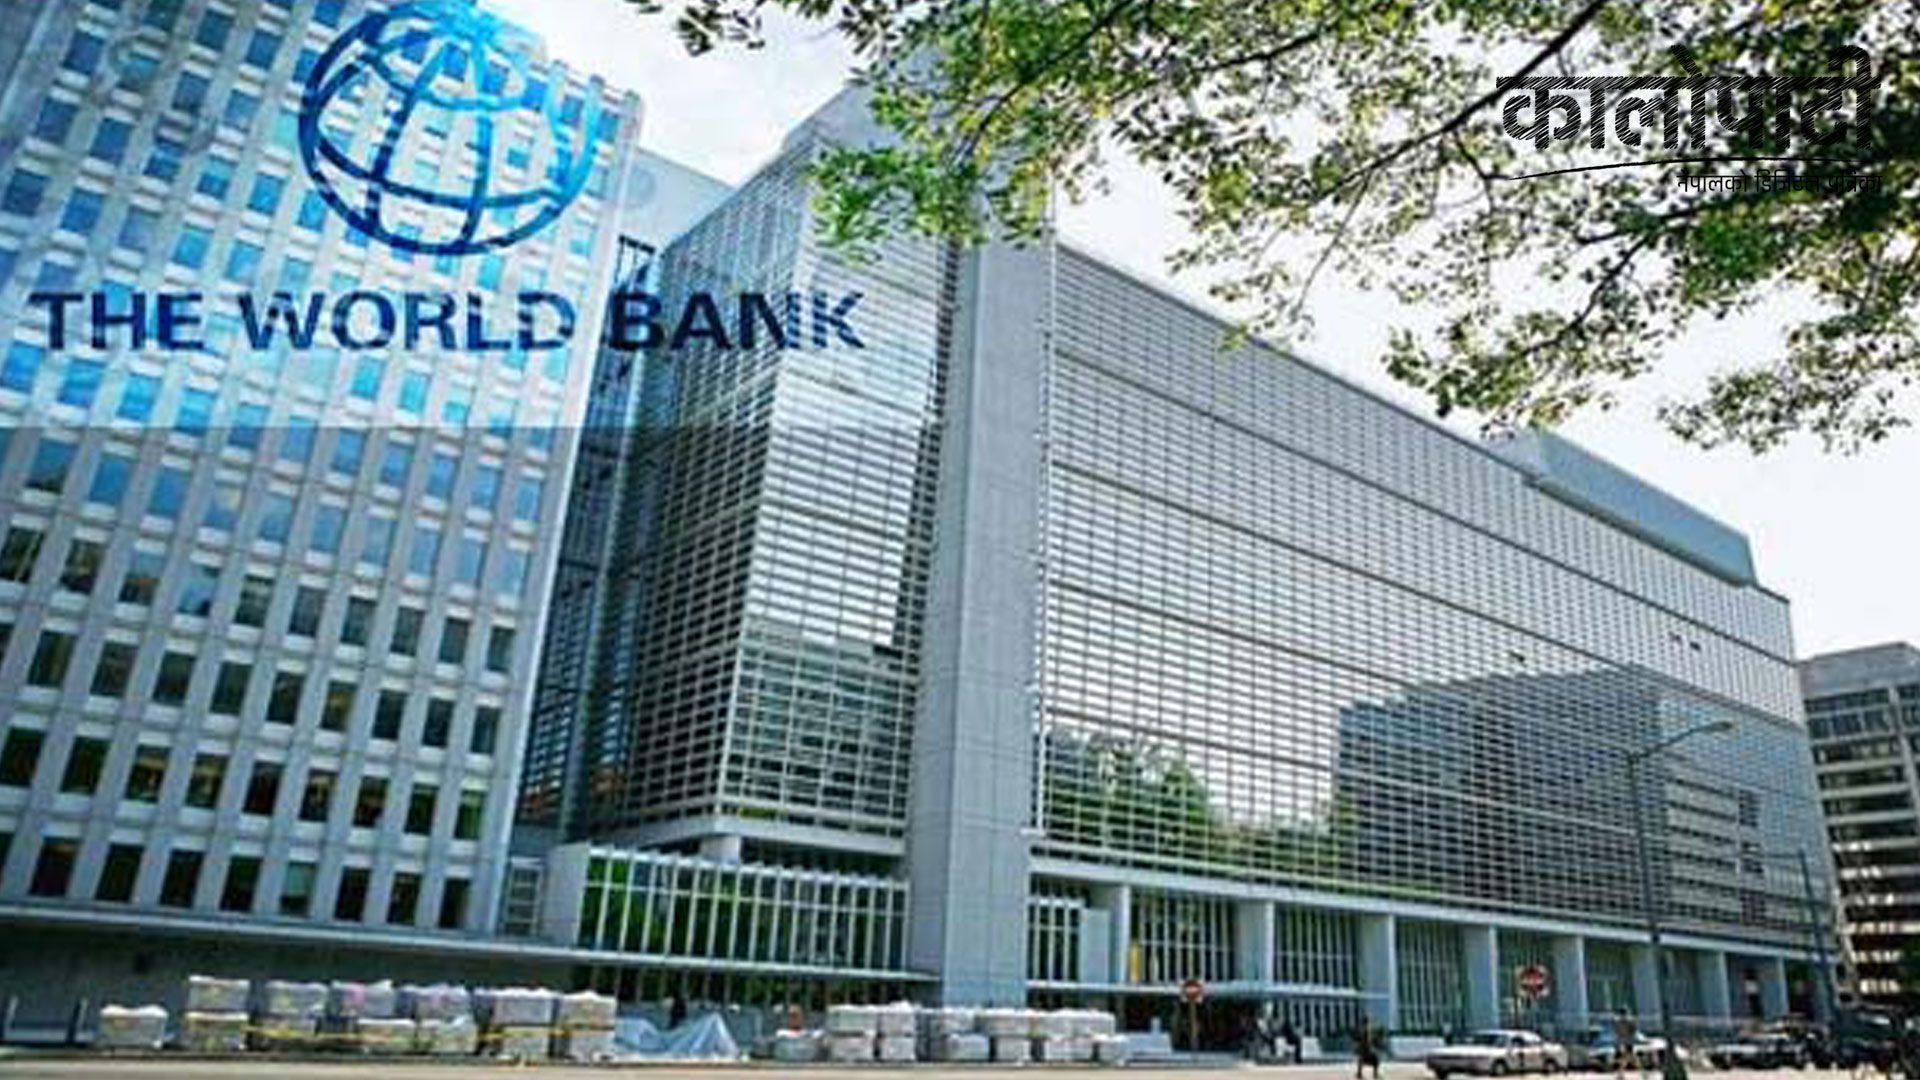 विश्व बैंकबाट नेपाललाई पौने १३ अर्ब ऋण स्वीकृत, गरिबी निवारणमा सहयोग पुग्ने विश्वास